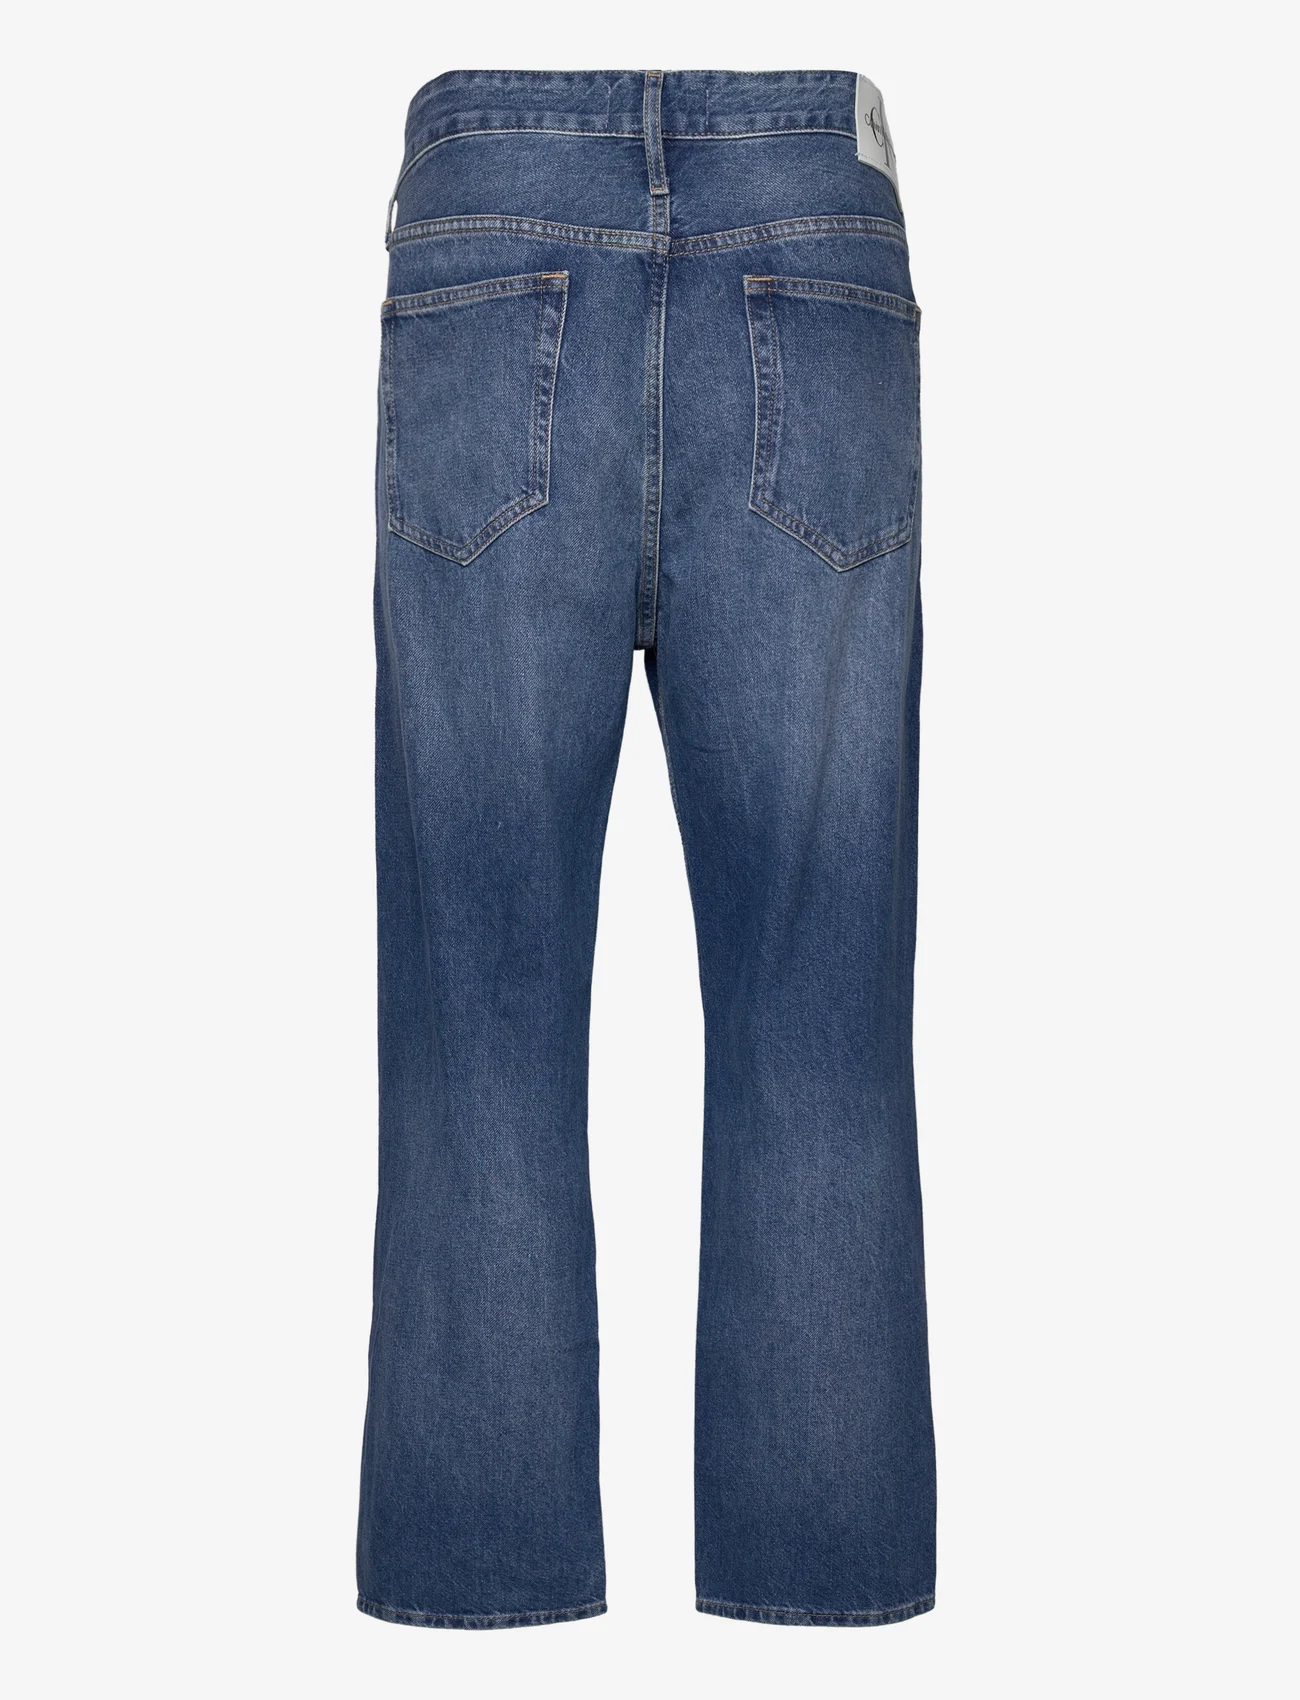 Calvin Klein Jeans - 90S STRAIGHT - suorat farkut - denim medium - 1